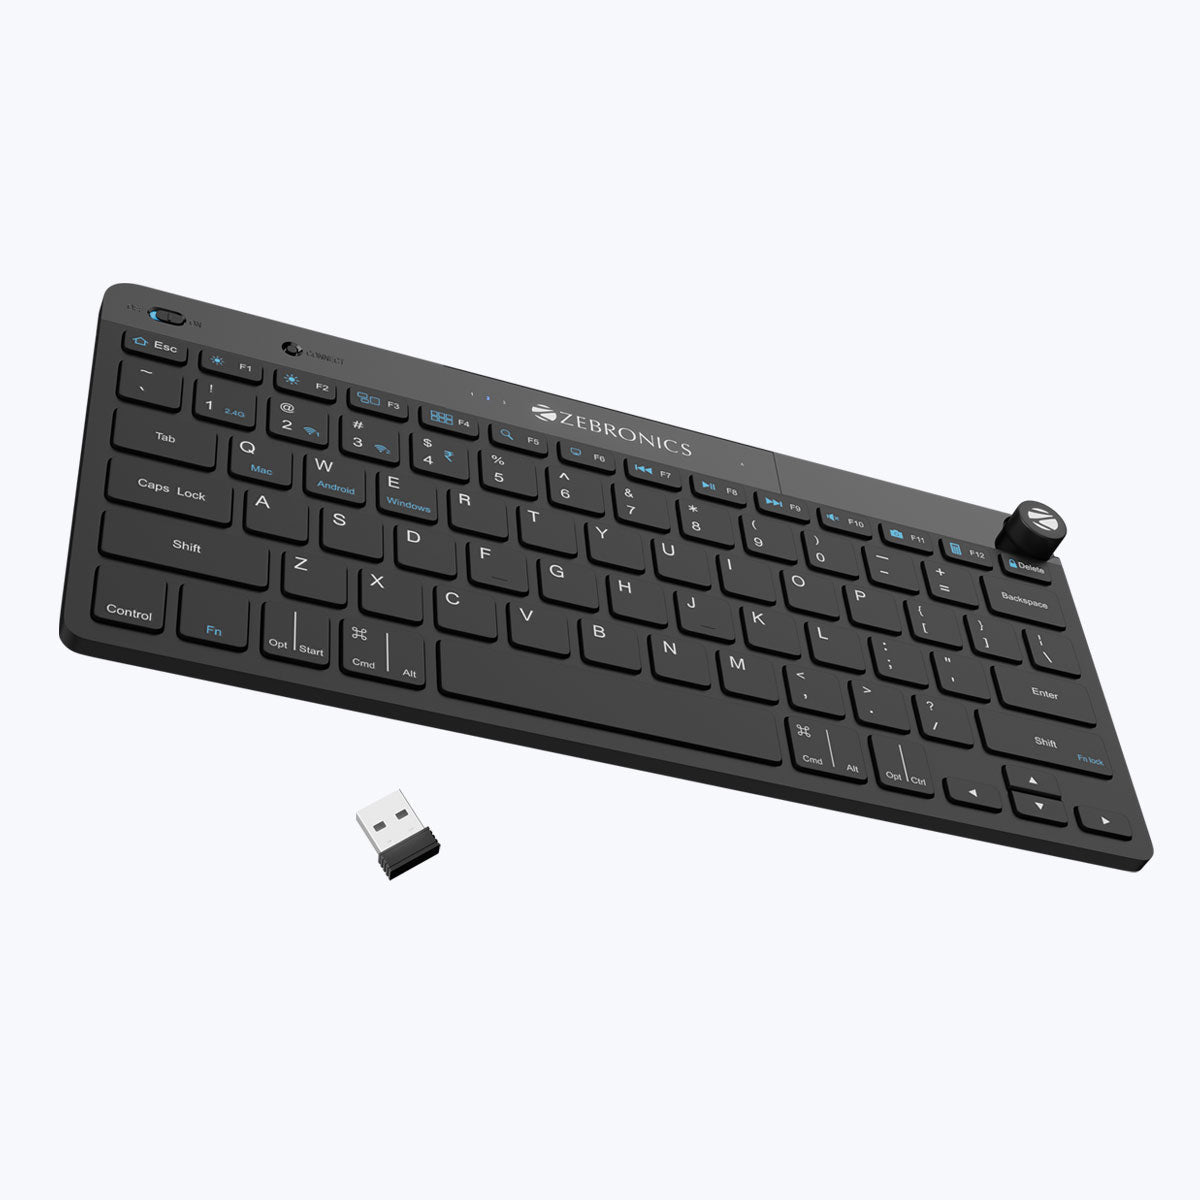 Zeb-Keypad X1 - Wireless Keyboard - Zebronics